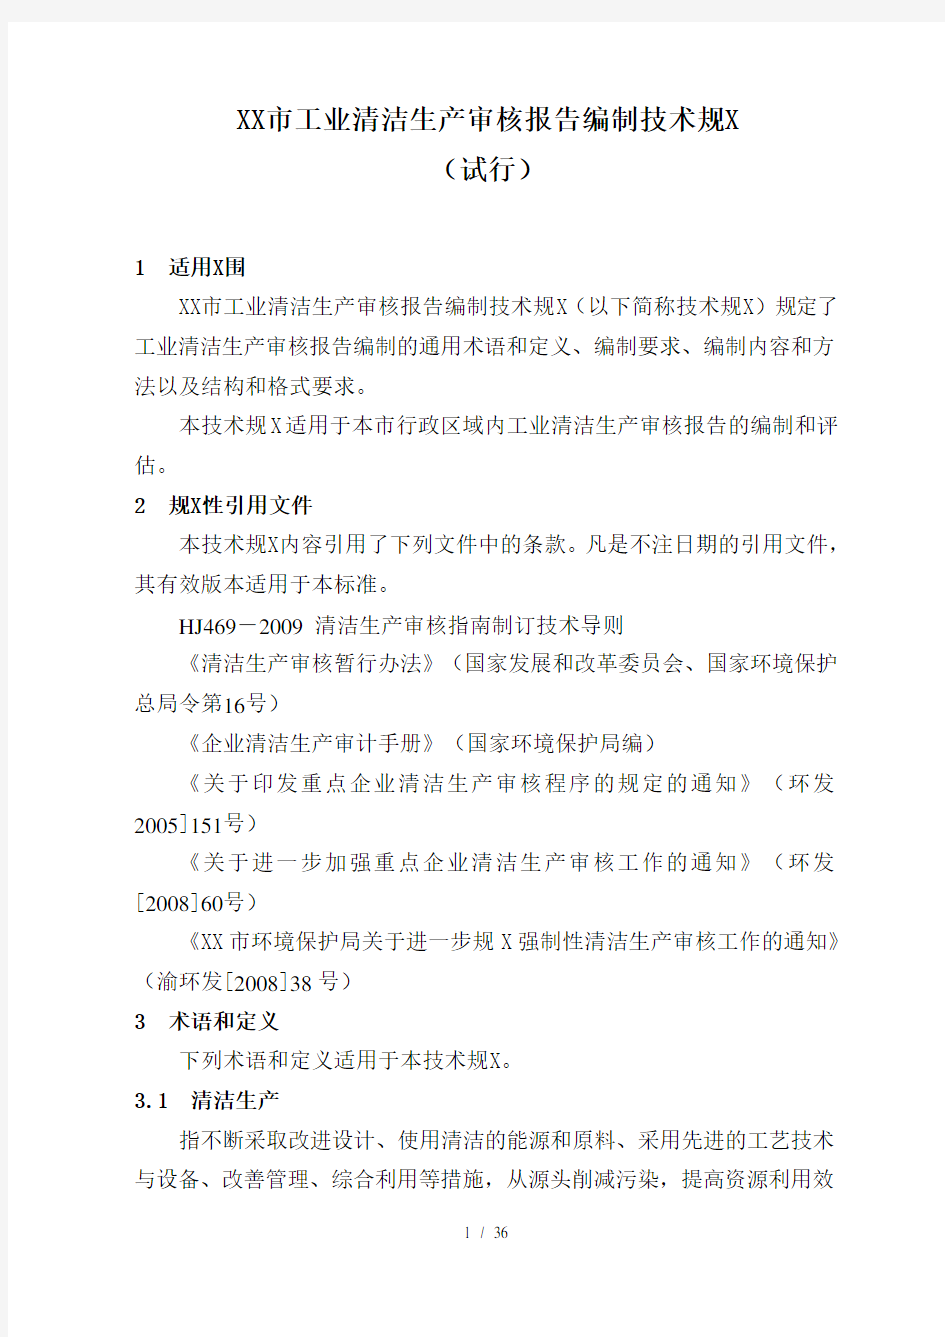 重庆市工业清洁生产审核报告编制技术规范(试行)